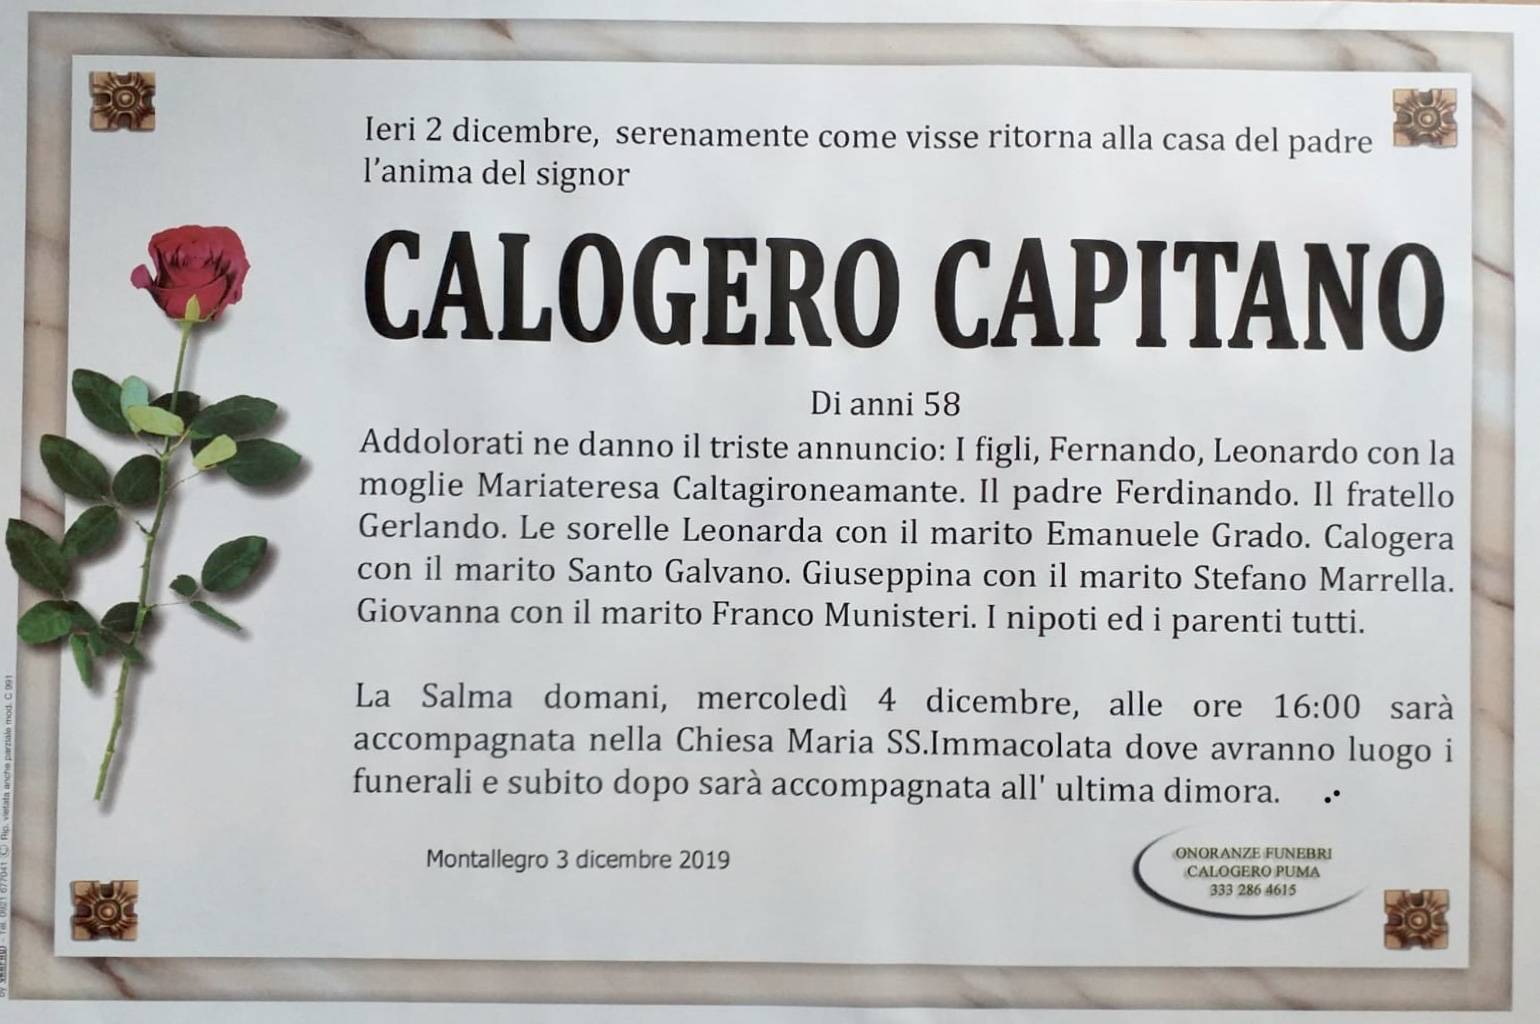 Calogero Capitano